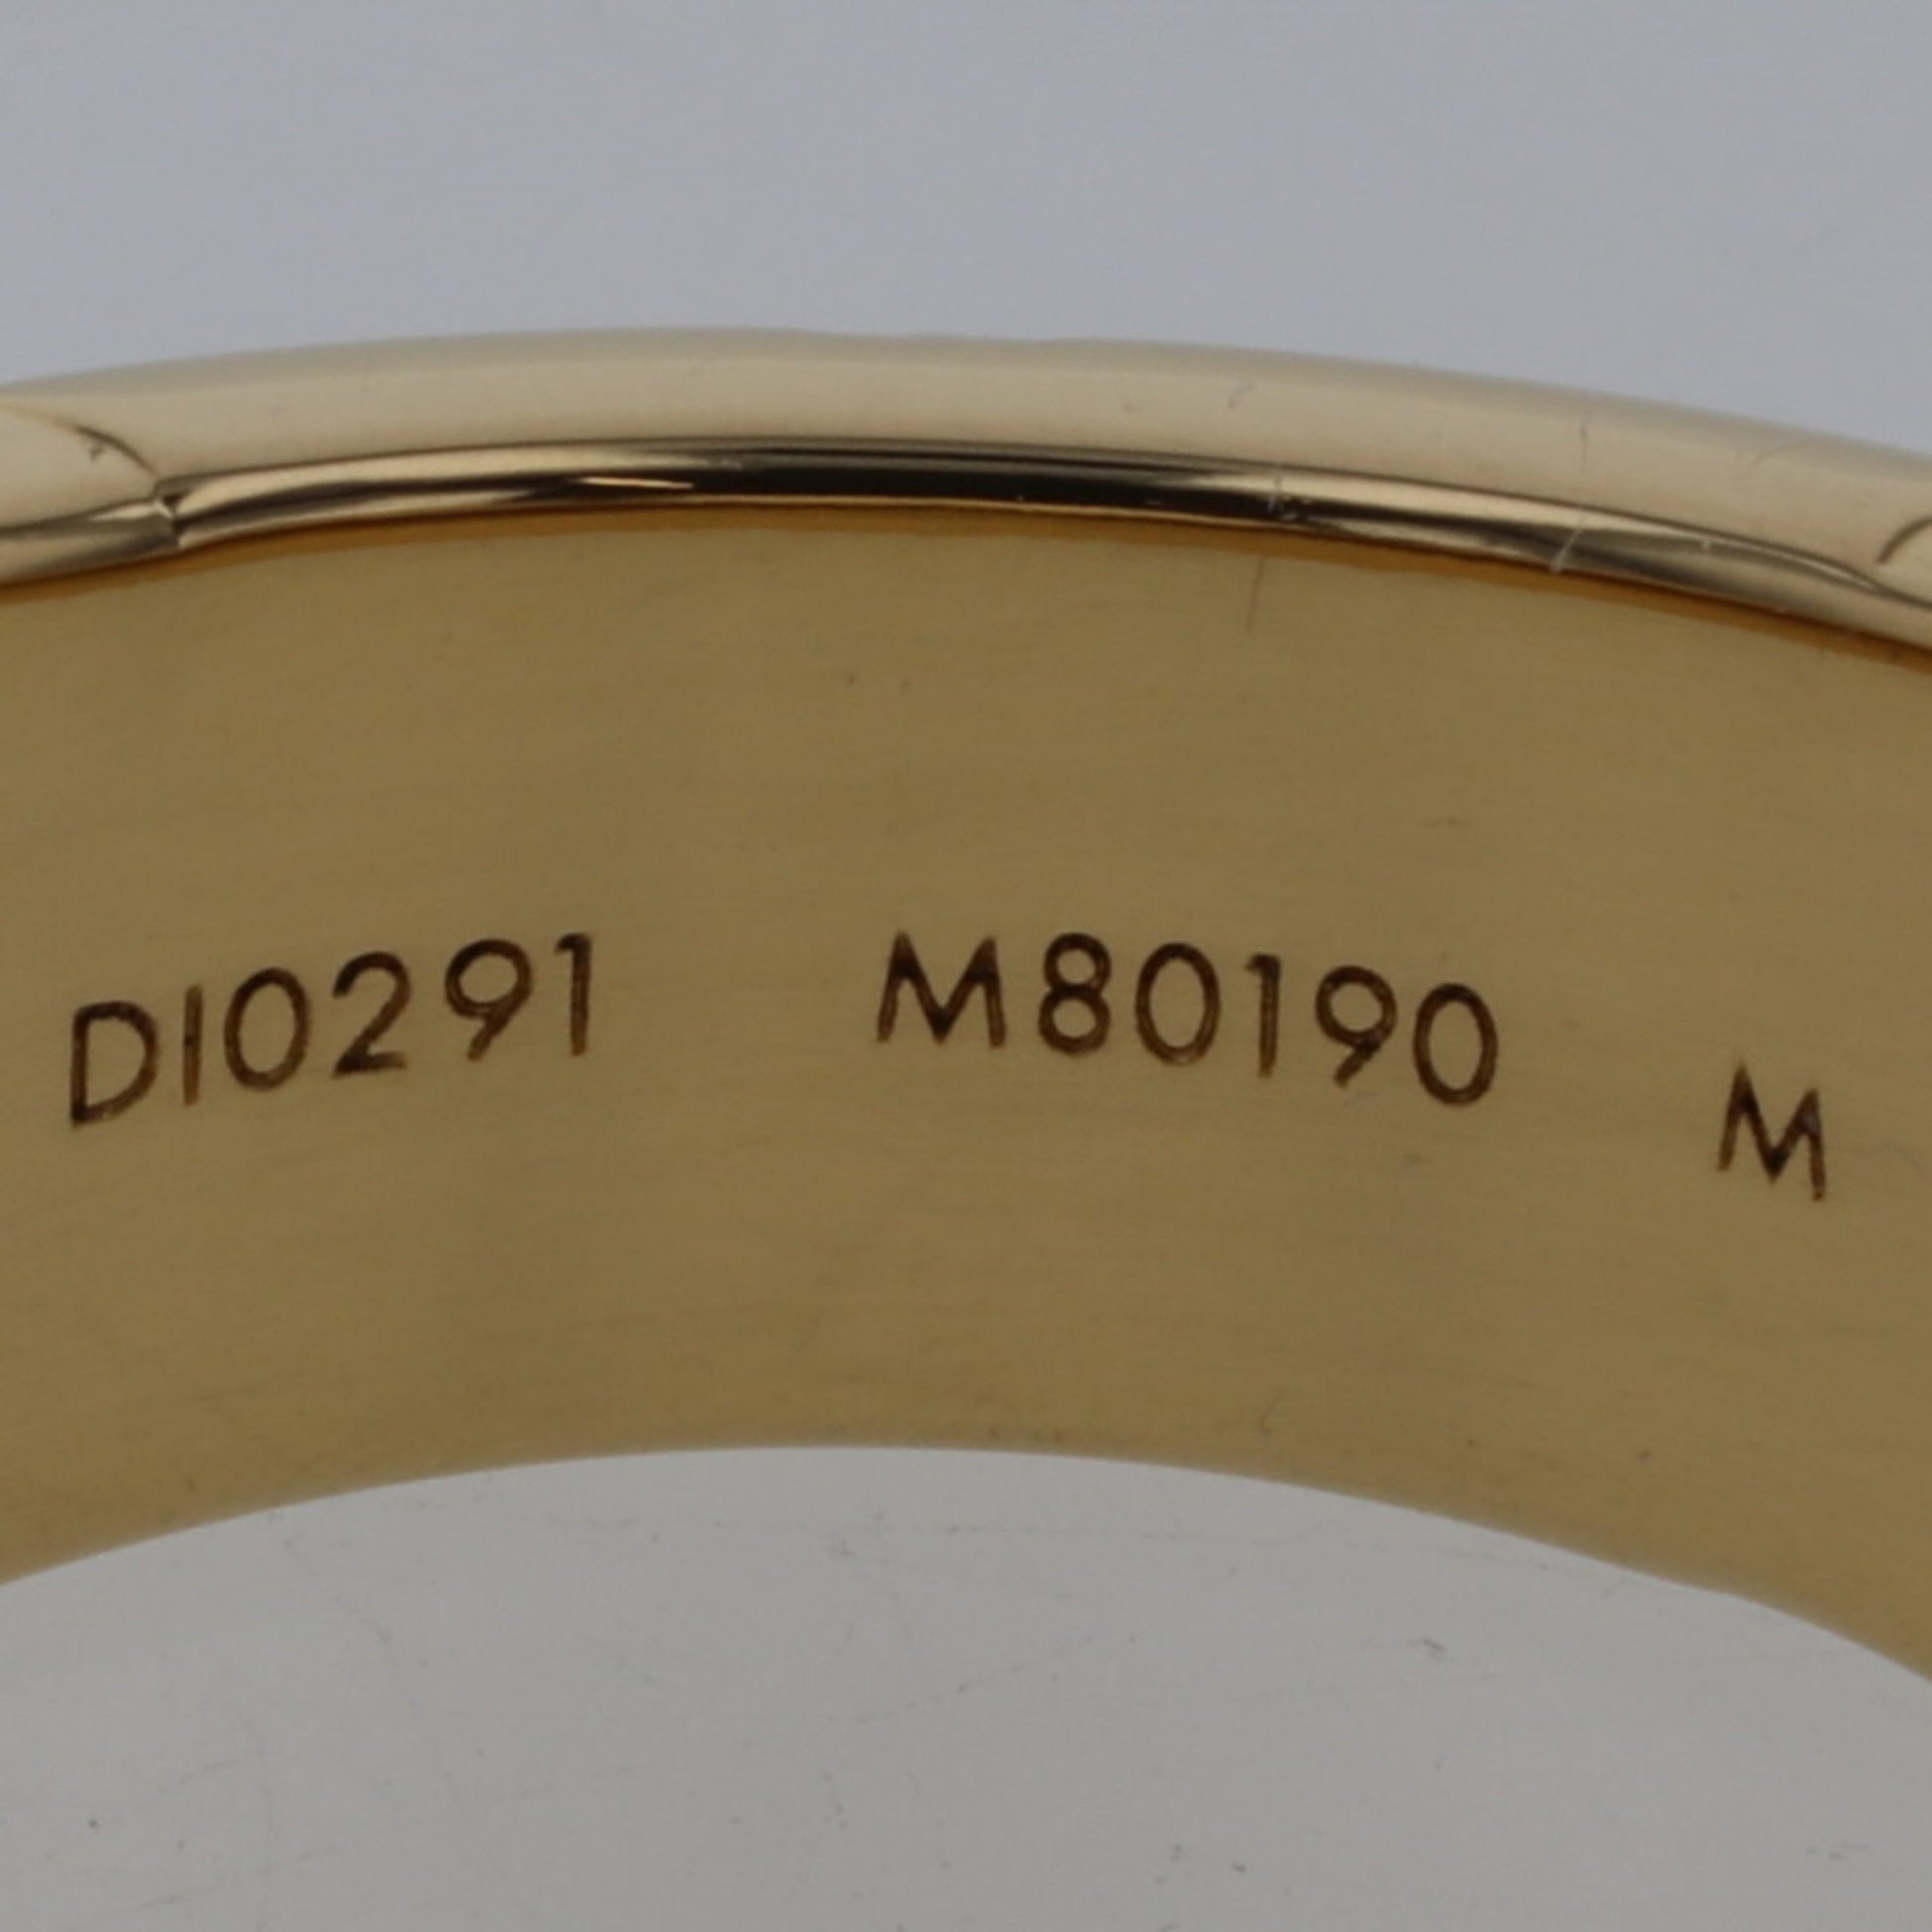 Shop Louis Vuitton Monogram Signet Ring (M80190) by SpainSol